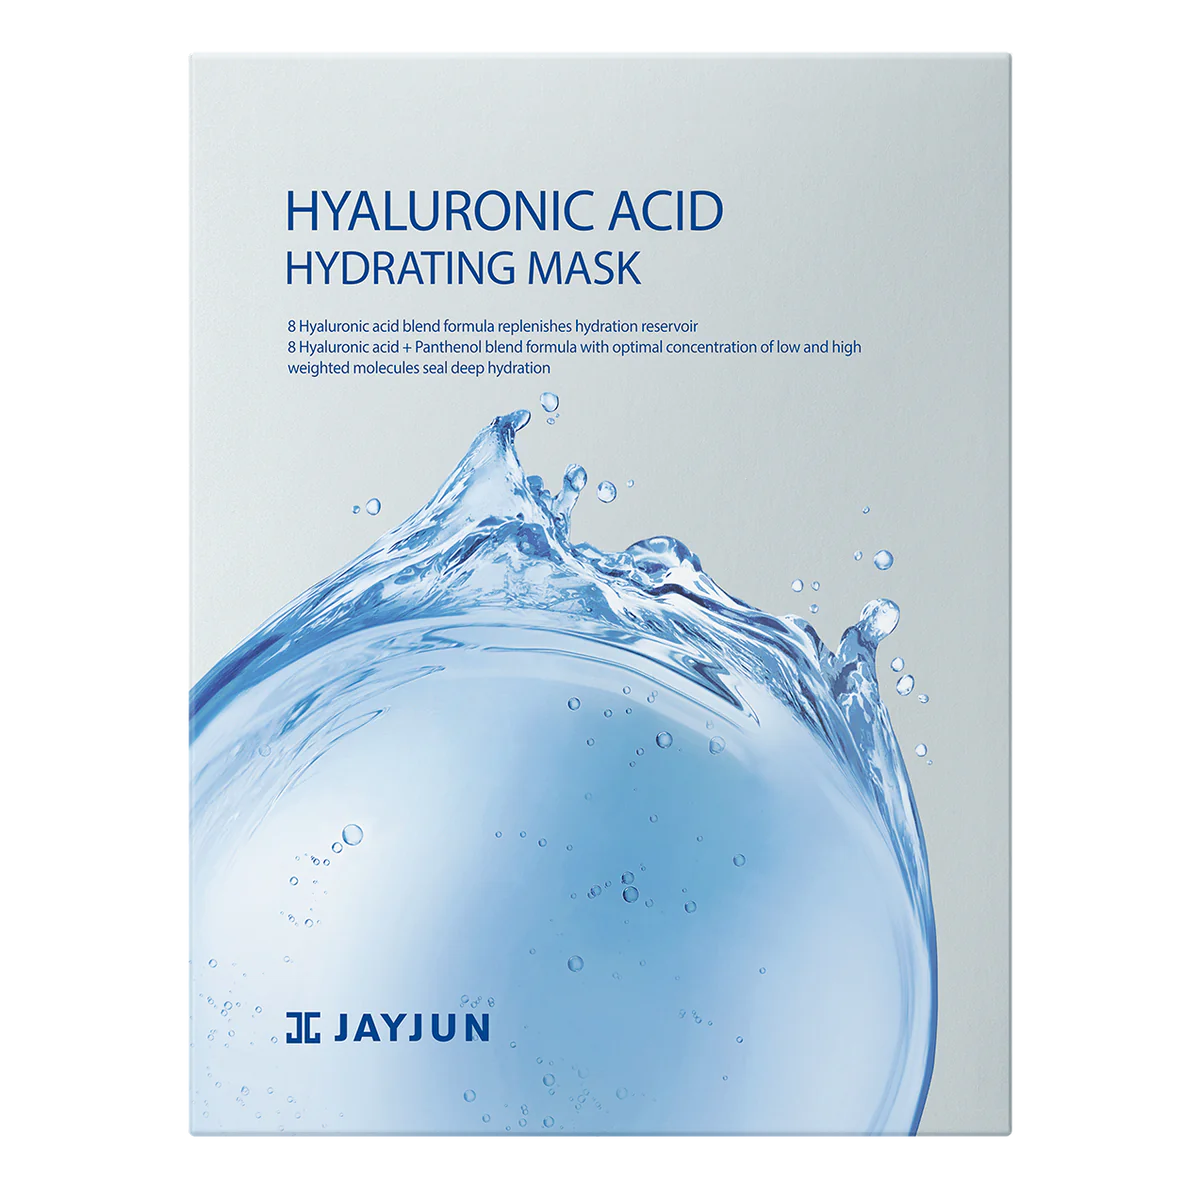 JAYJUN Hyaluronic Acid Hydrating Mask اقنعه هیالورونیك اسد